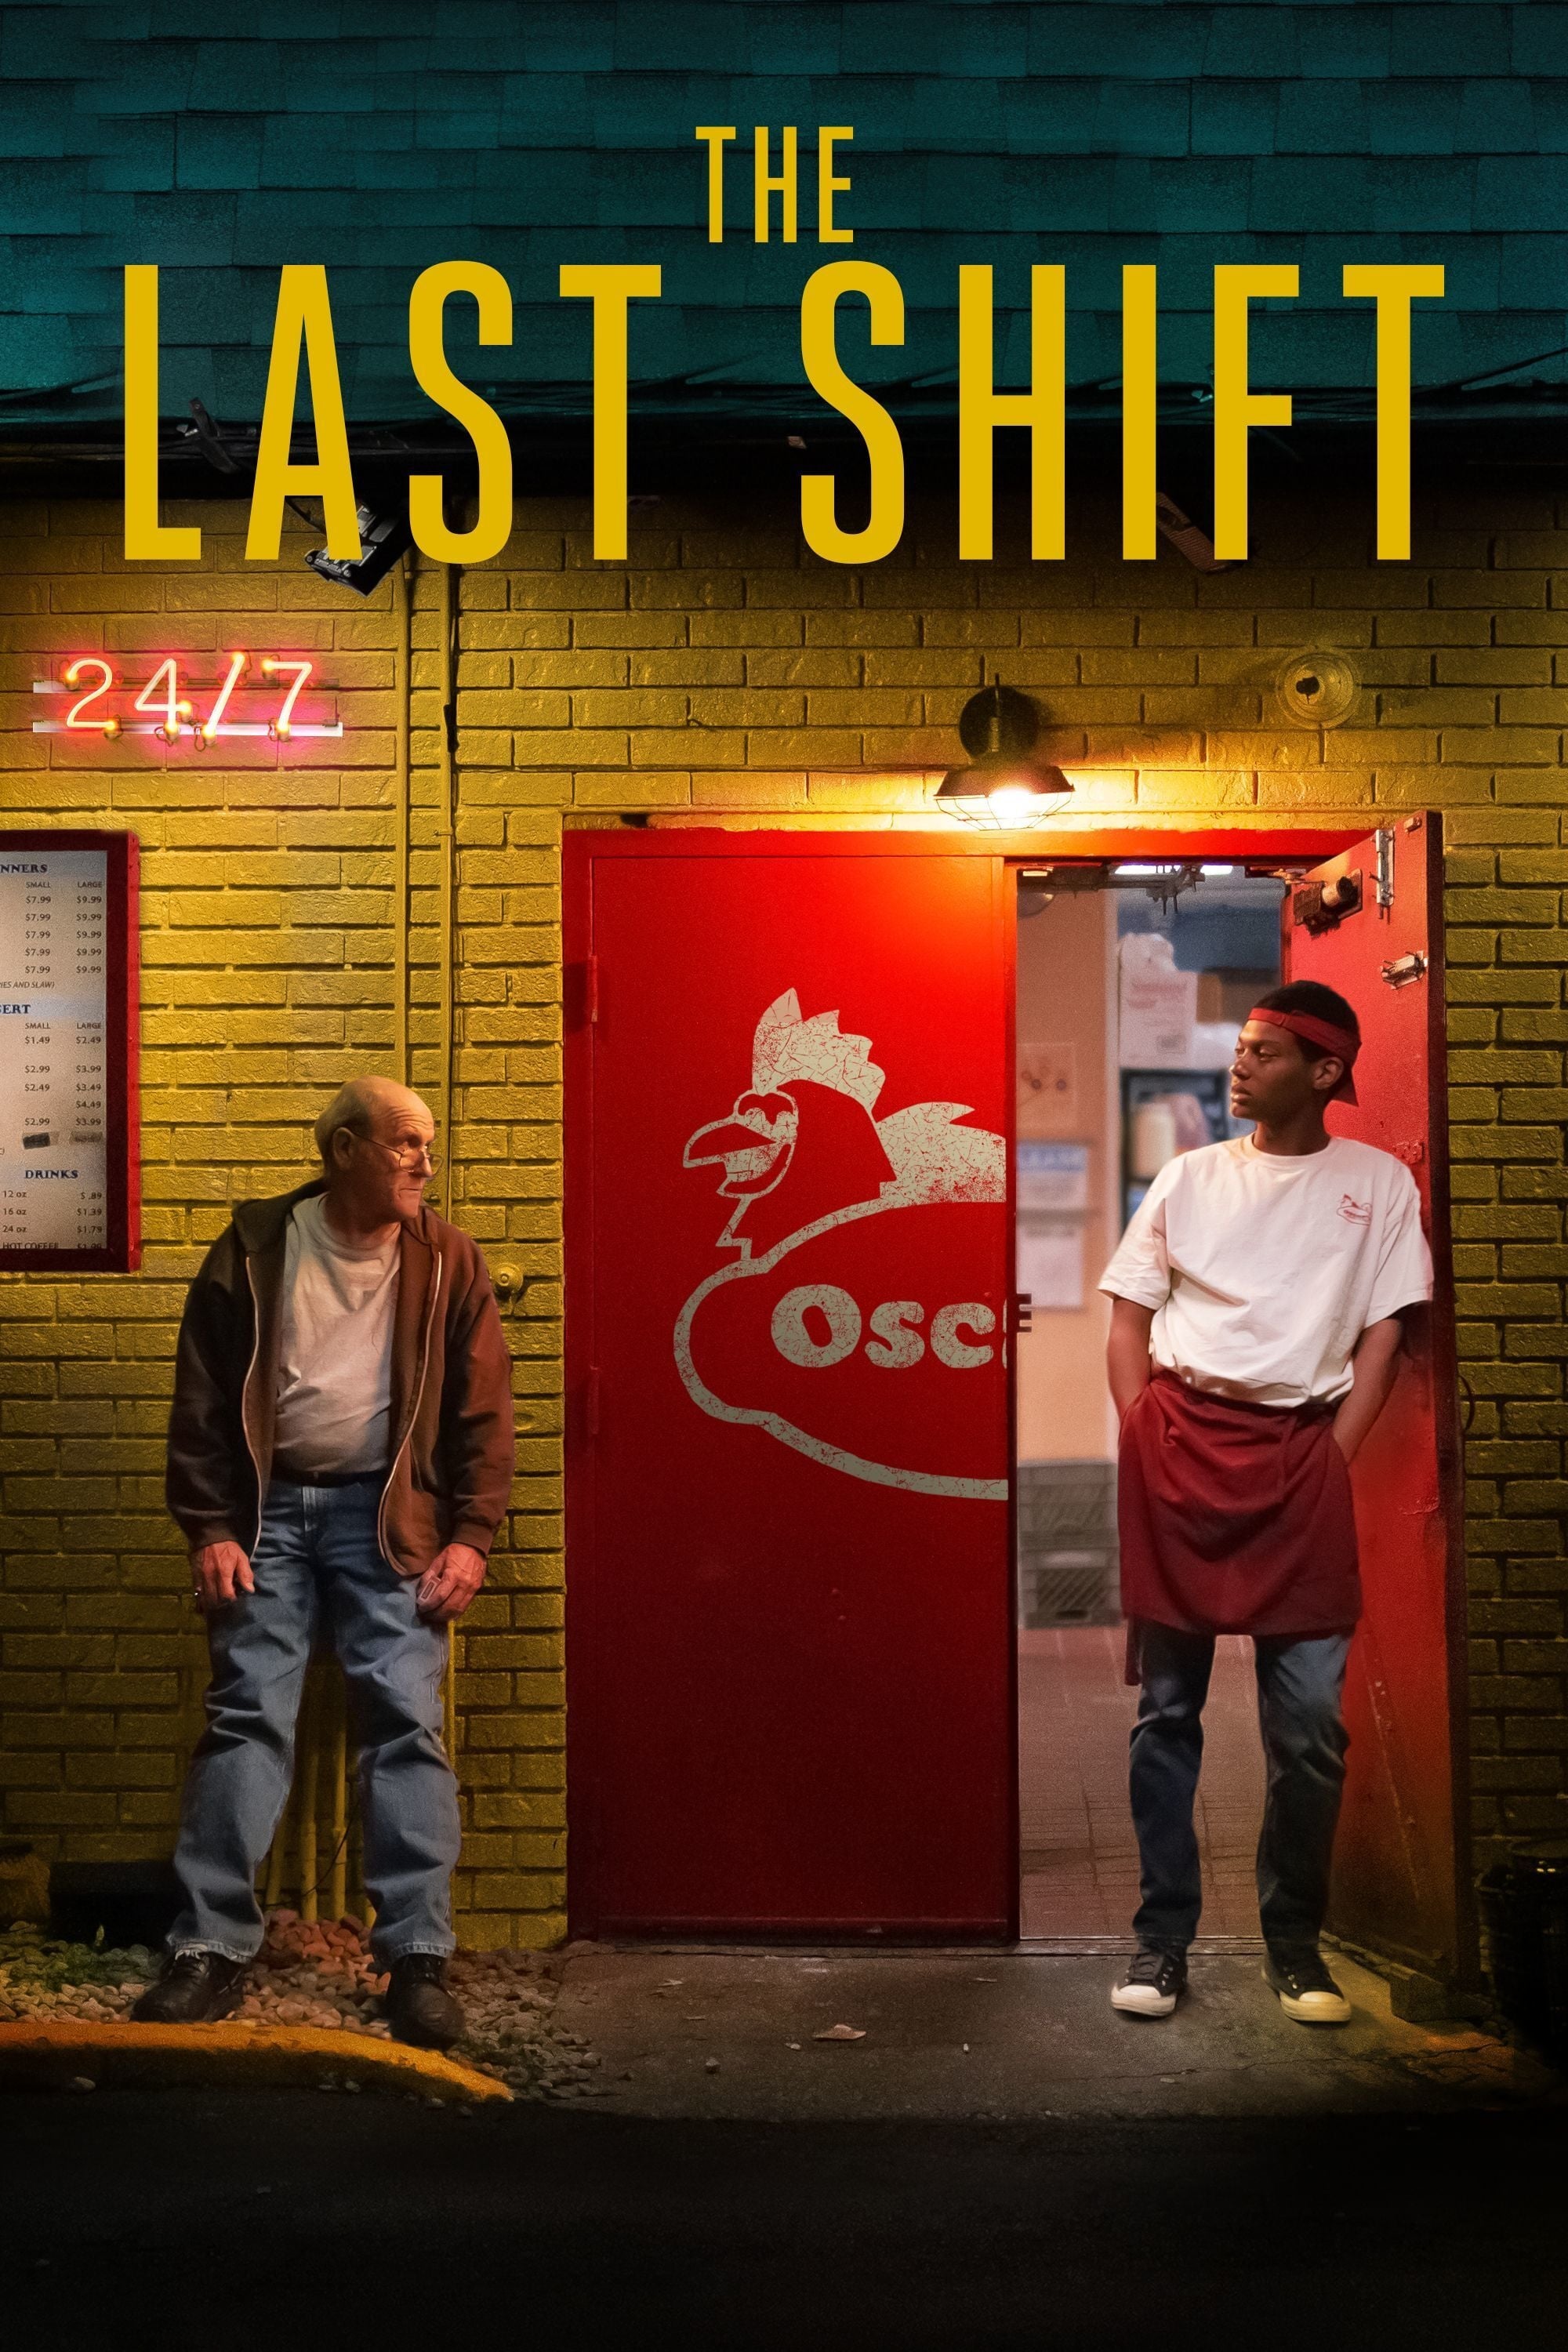 Caratula de THE LAST SHIFT (The Last Shift) 